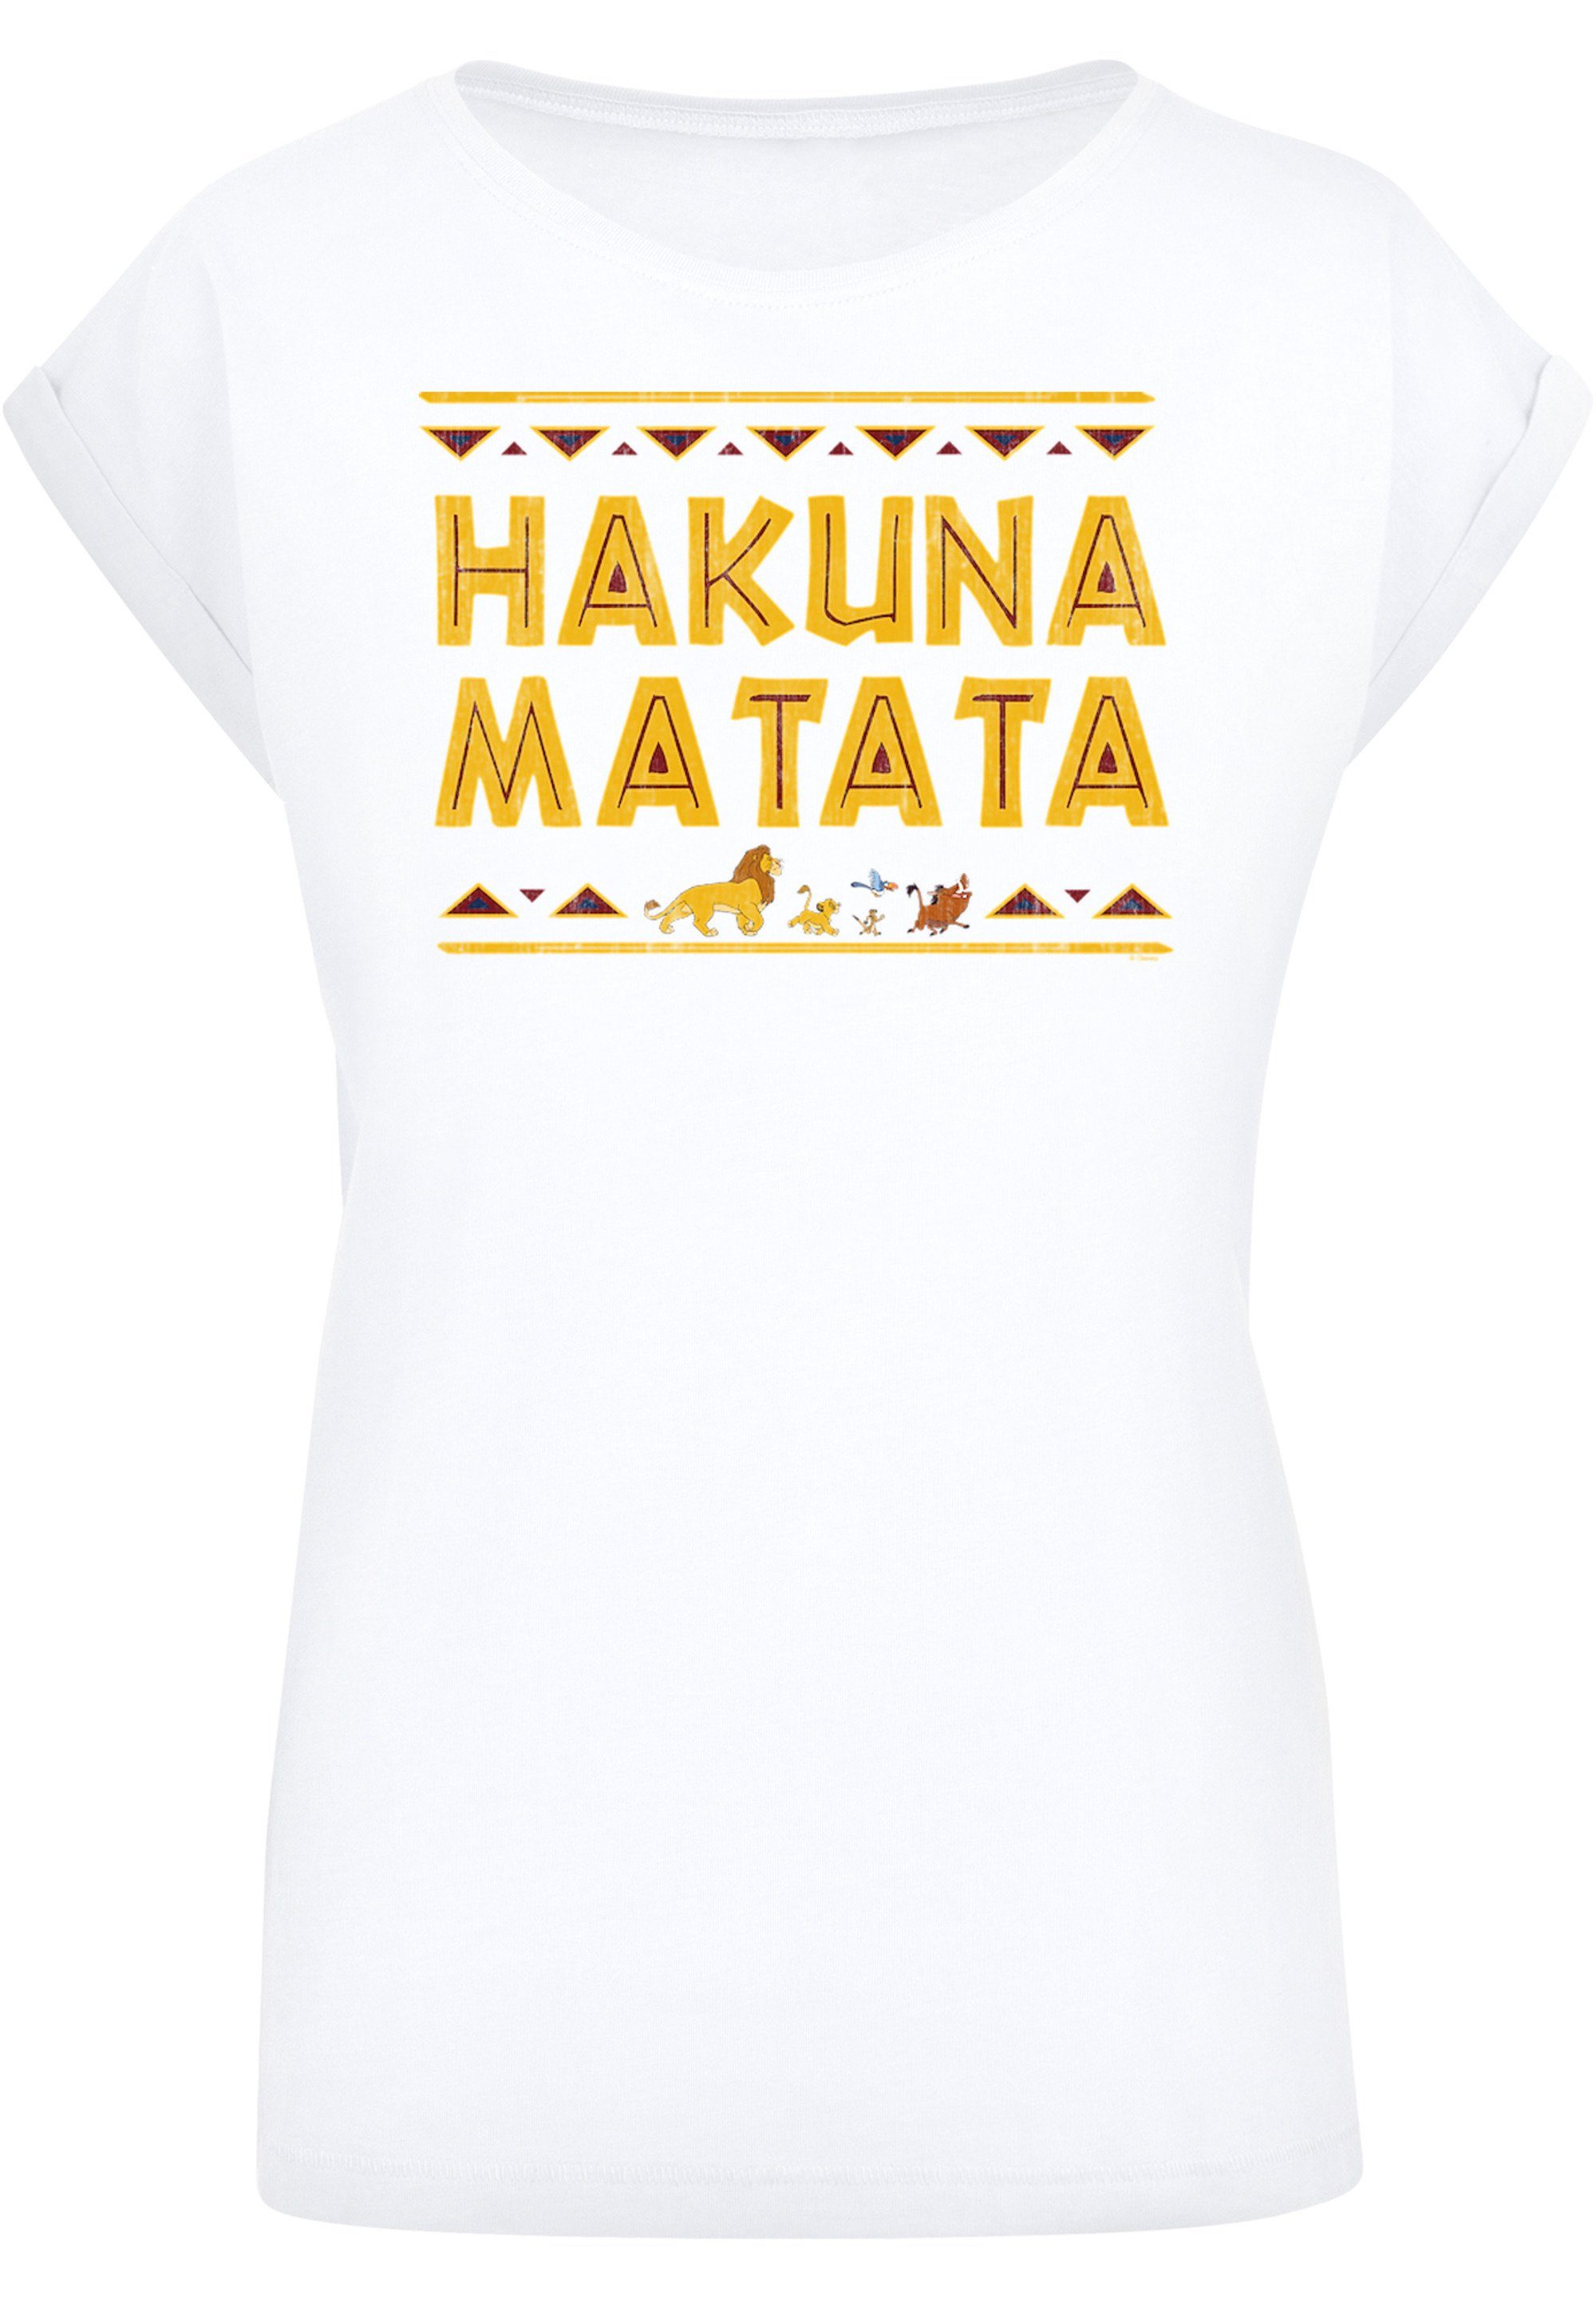 Print, Hakuna T-Shirt T-Shirt mit Matata Sehr F4NT4STIC der weicher König Baumwollstoff hohem Tragekomfort Löwen Disney